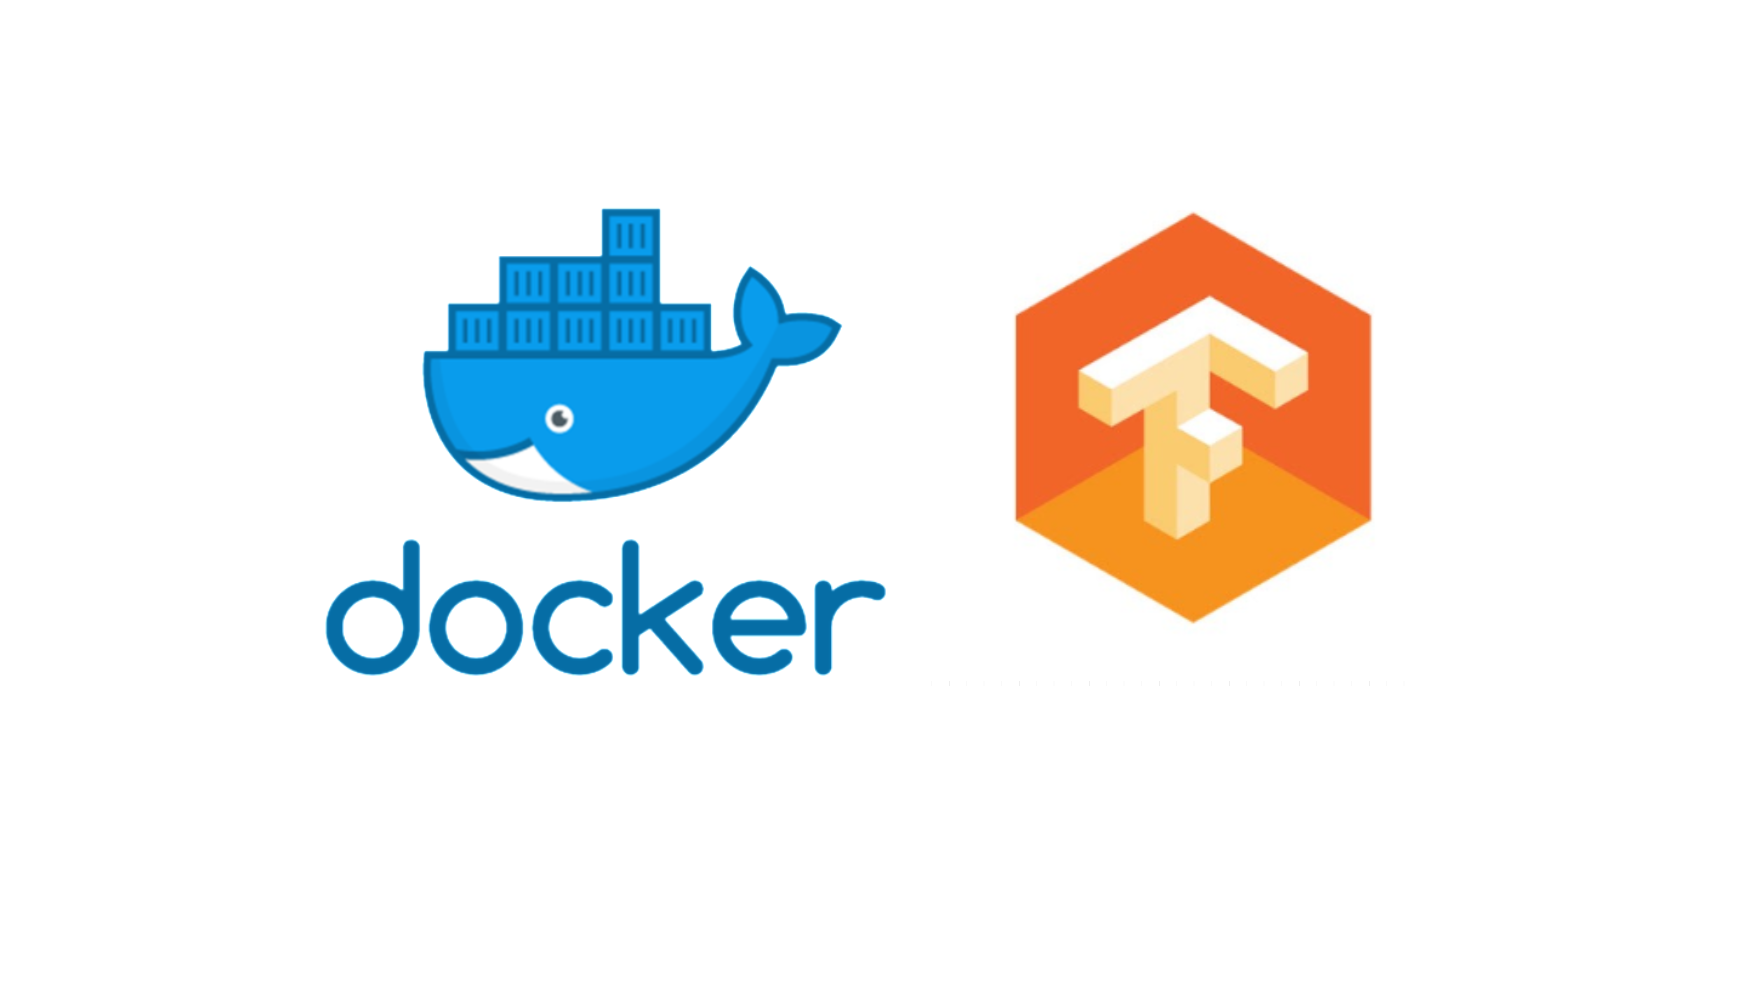 TensorFlow + Docker MNIST Classifier - Introduction